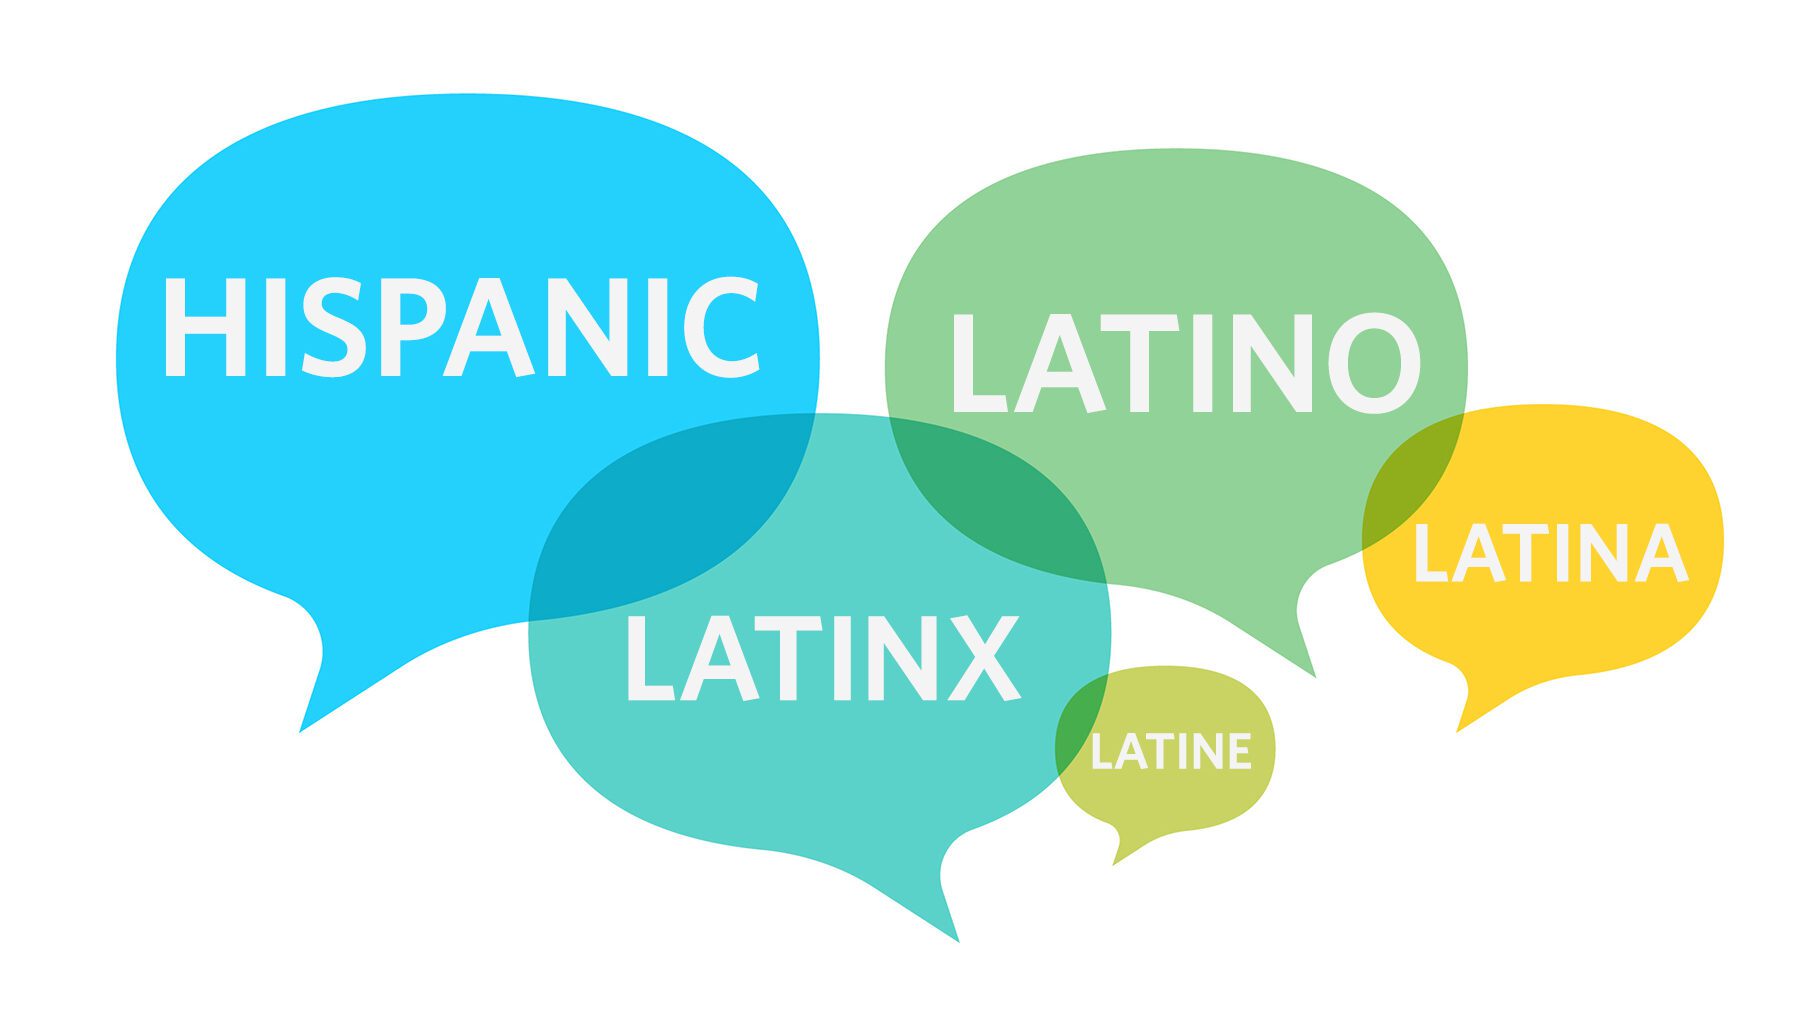 El término "latinx", hispanic, latino, latina, latine
